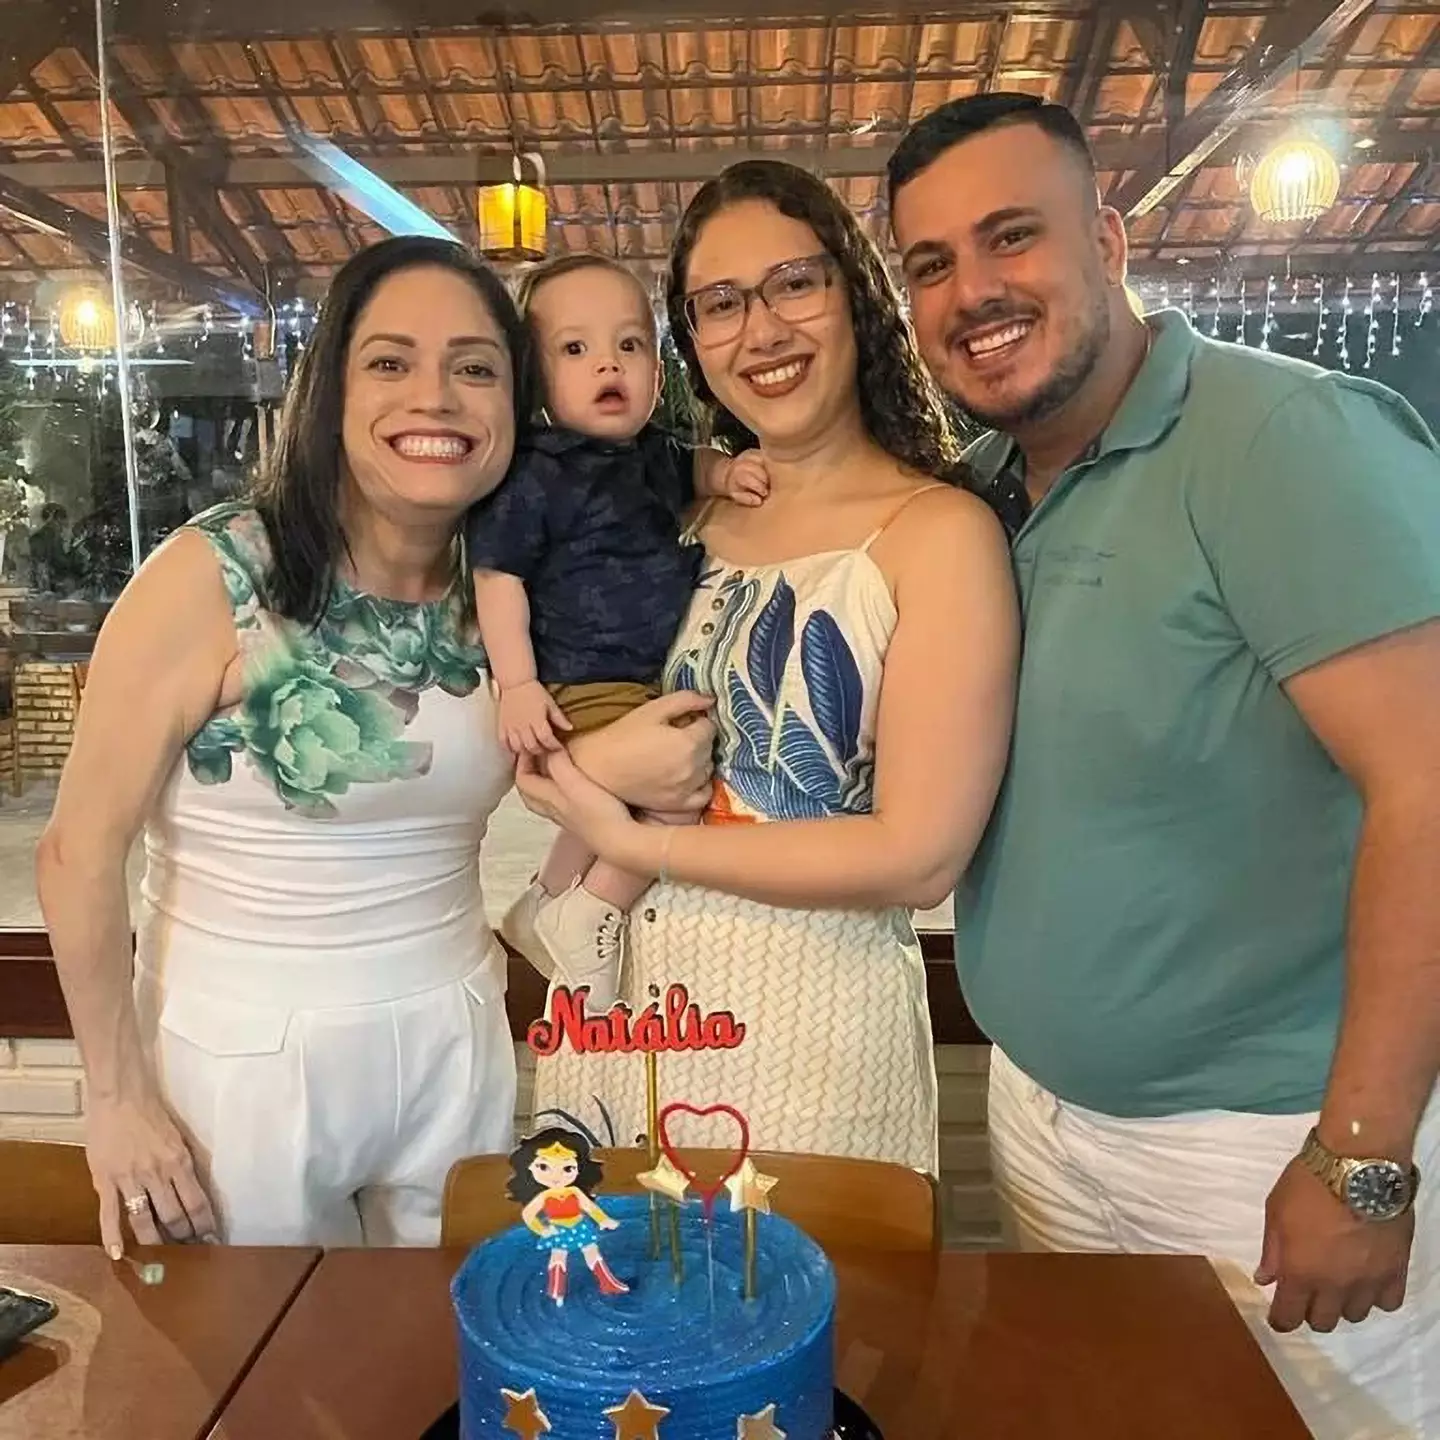 Natalia Nogueira and Jamille Ferreira, and dad Ruan Vieira with baby Bernardo.